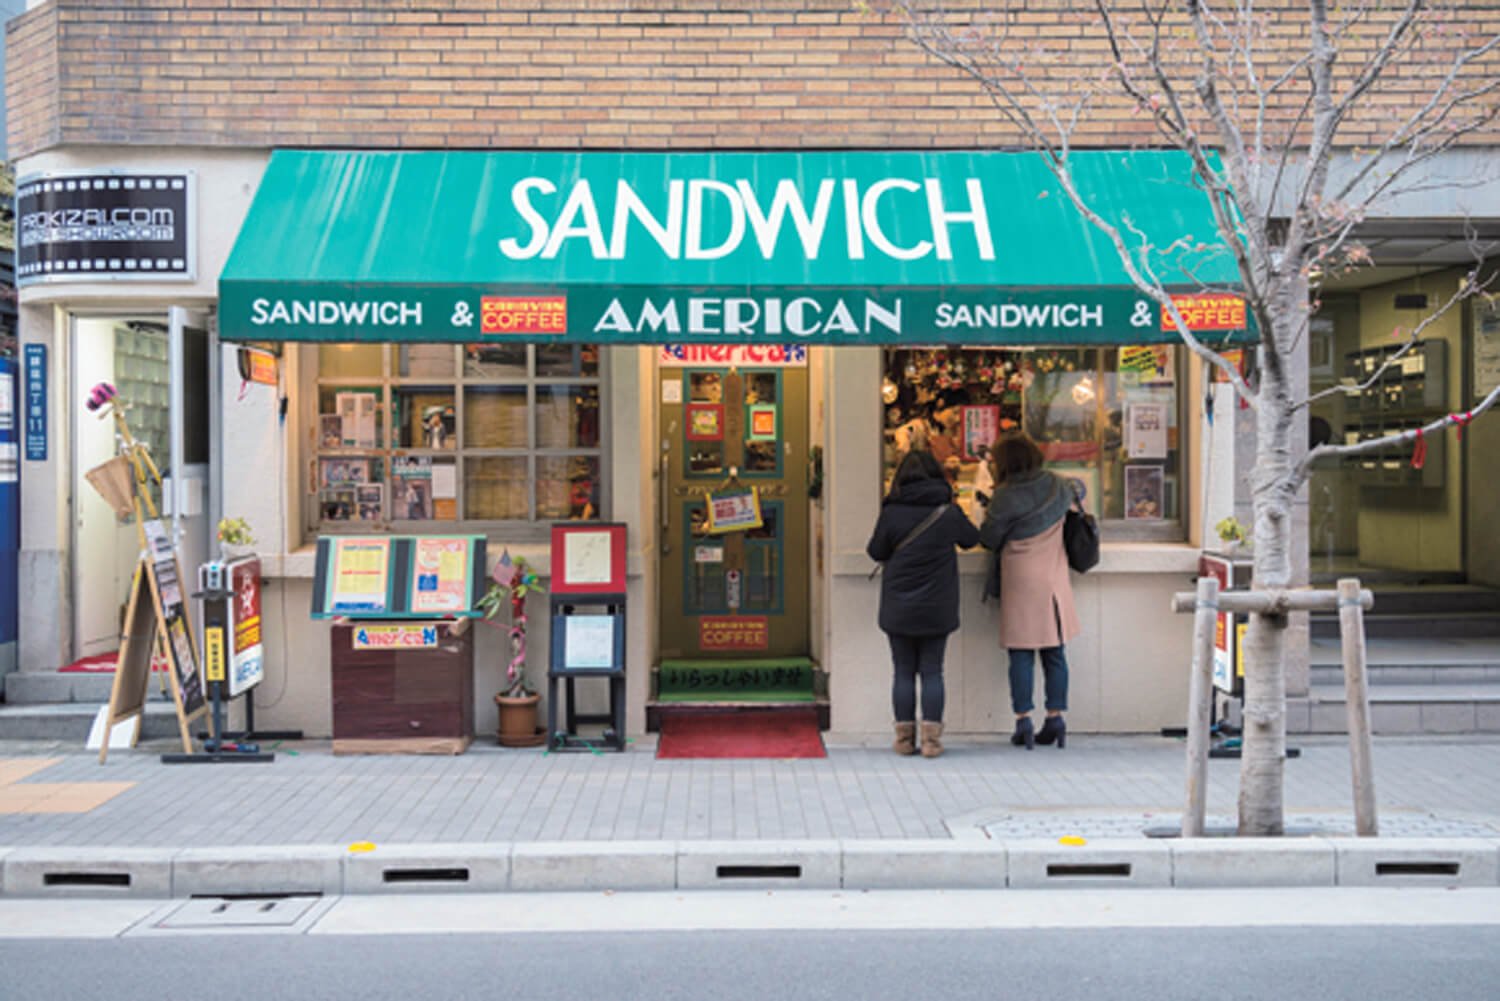 ニューヨークのデリのような陽気な外観。テイクアウトのサンドイッチが飛ぶように売れてゆく。